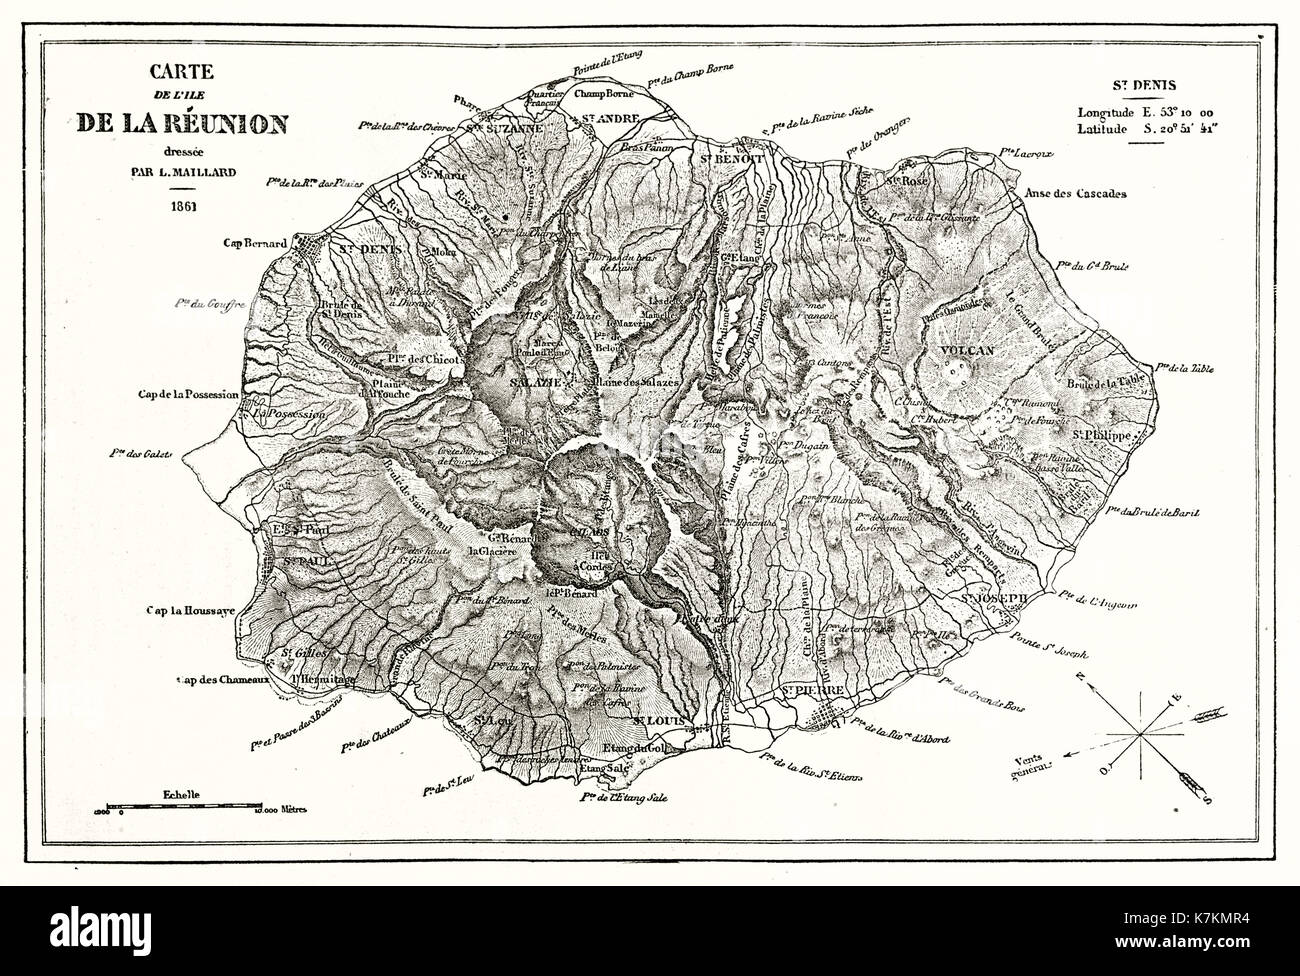 Carte ancienne de l'île de la réunion. Par Erhard et Bonaparte, publ. sur le Tour du Monde, Paris, 1862 Banque D'Images